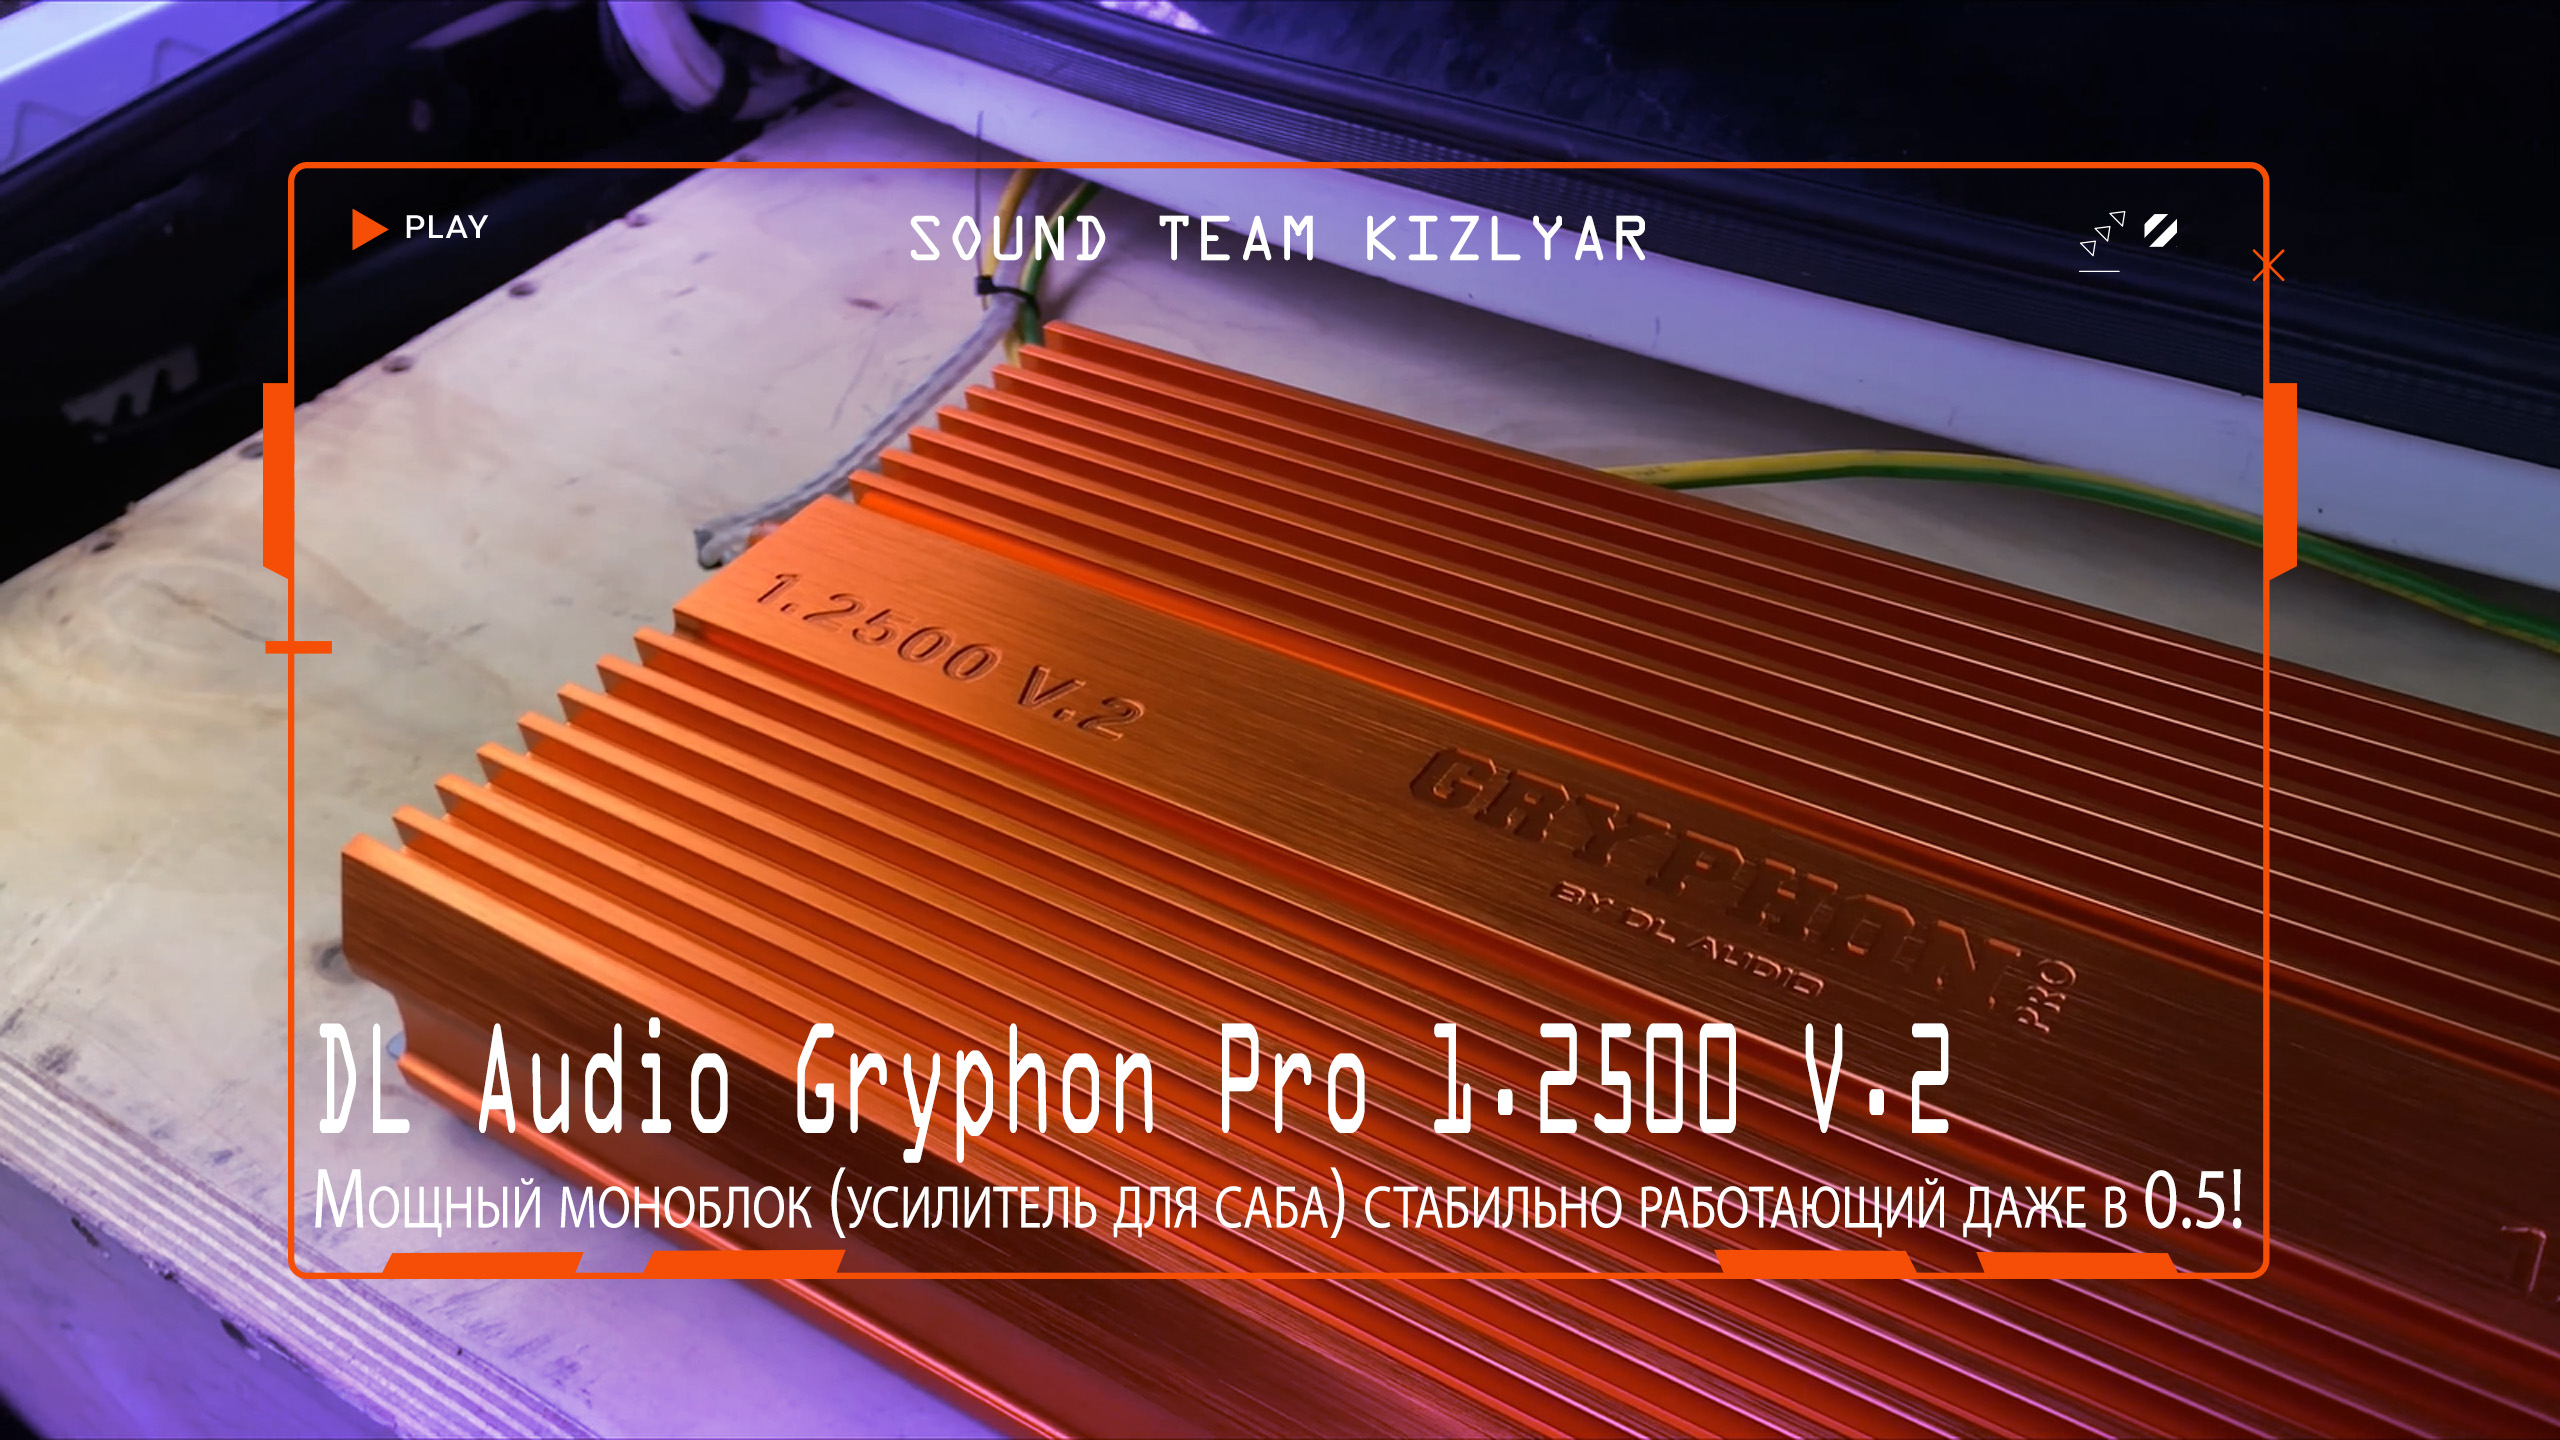 Мощный моноблок (усилитель для саба) стабильно работающий даже в 0.5!DL Audio Gryphon Pro 1.2500 V.2